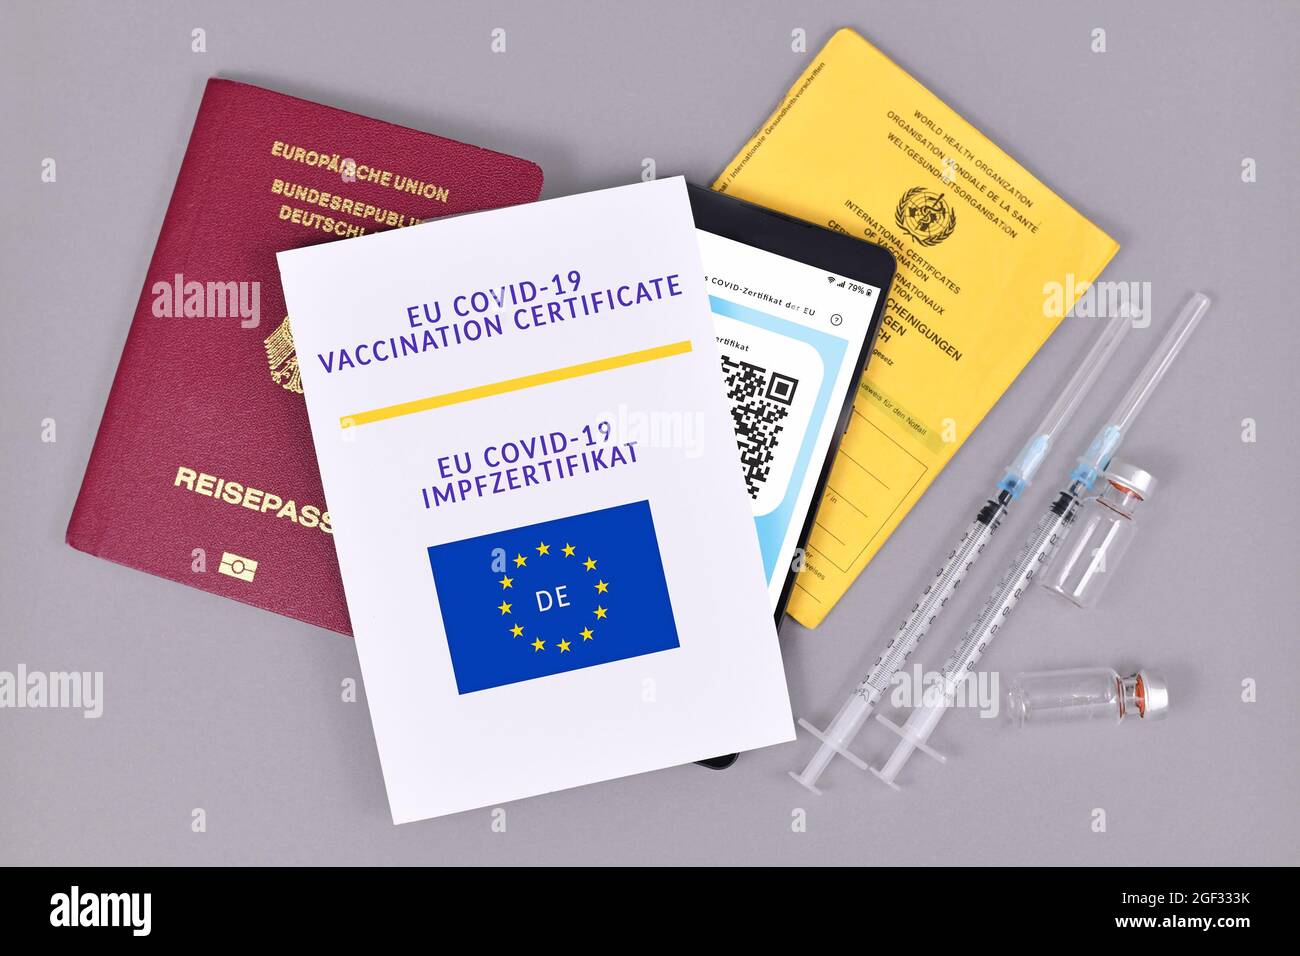 Allemagne - juillet 2021: Certificat de vaccination eu COVID-19 sur papier et numérique au téléphone, passeport vaccinal , identification de voyage et seringues avec flacons sur b gris Banque D'Images